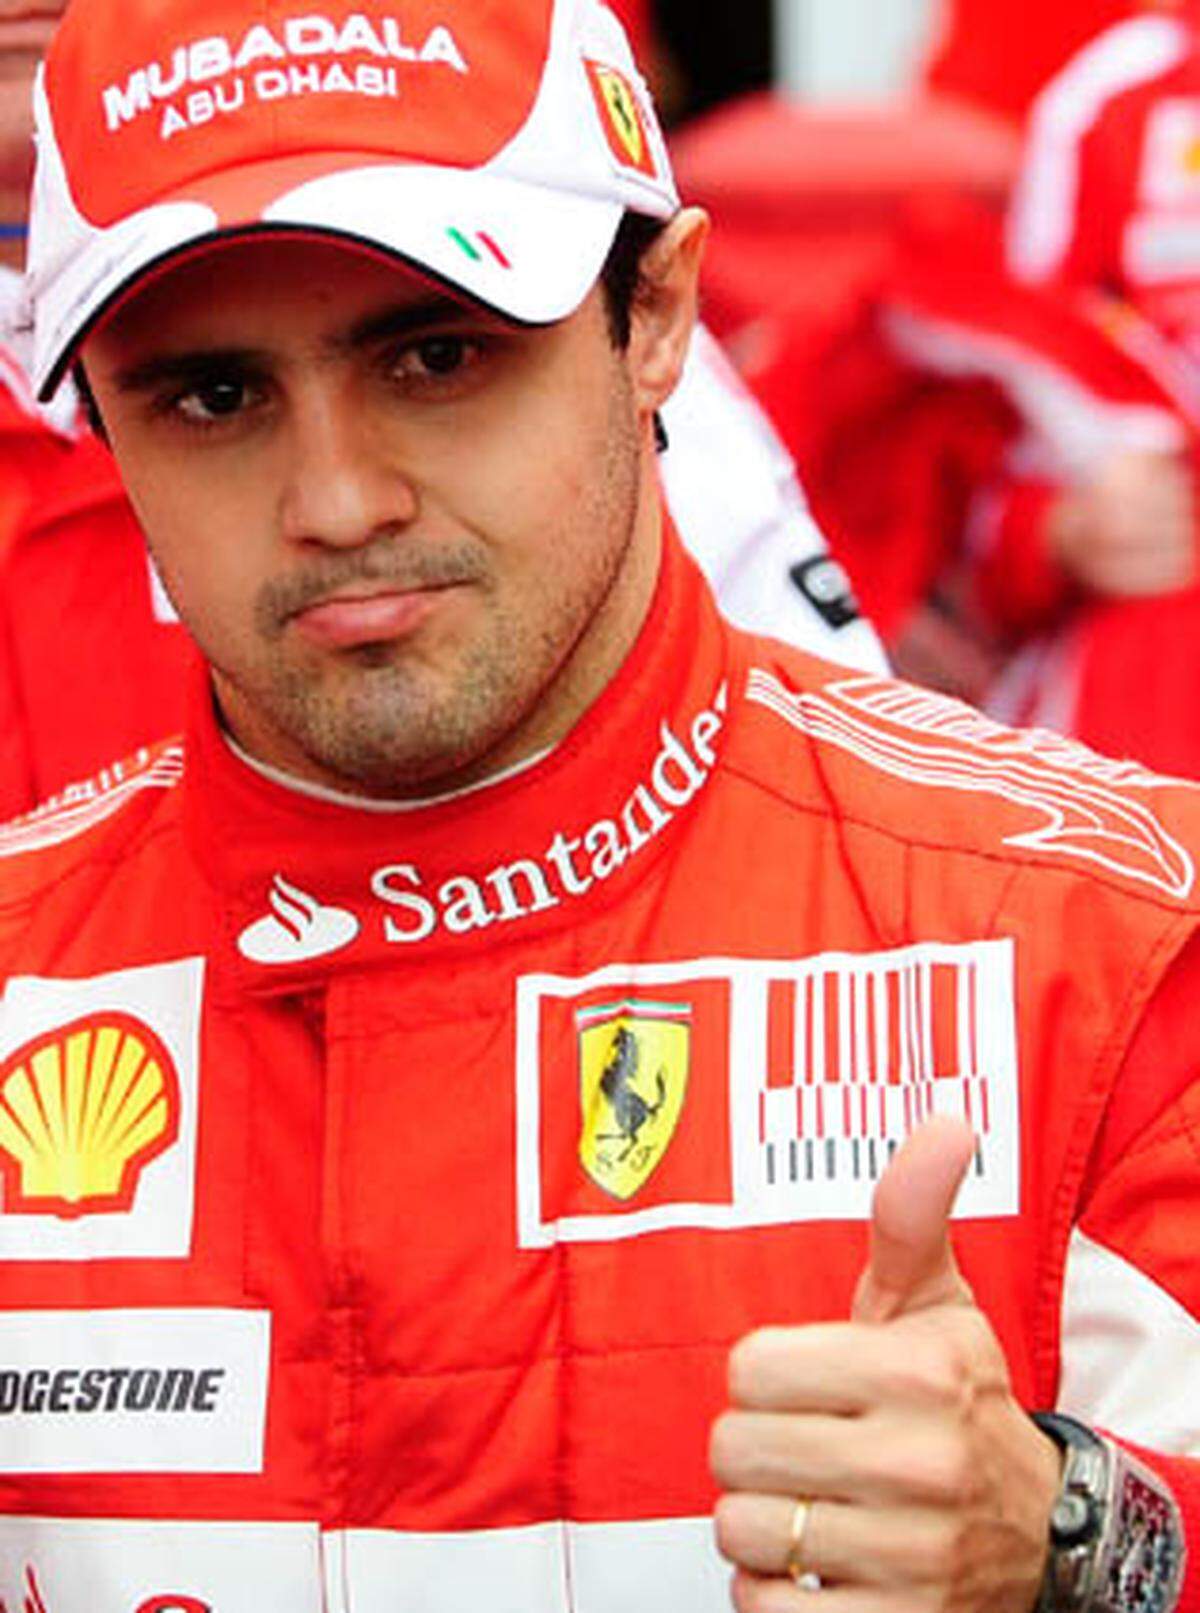 Zudem wird der Brasilianer Felipe Massa 2010 für Ferrari sein Renncomeback geben. Seit seinem schweren Unfall auf dem Hungaroring konnte Massa keinen Grand Prix mehr bestreiten.